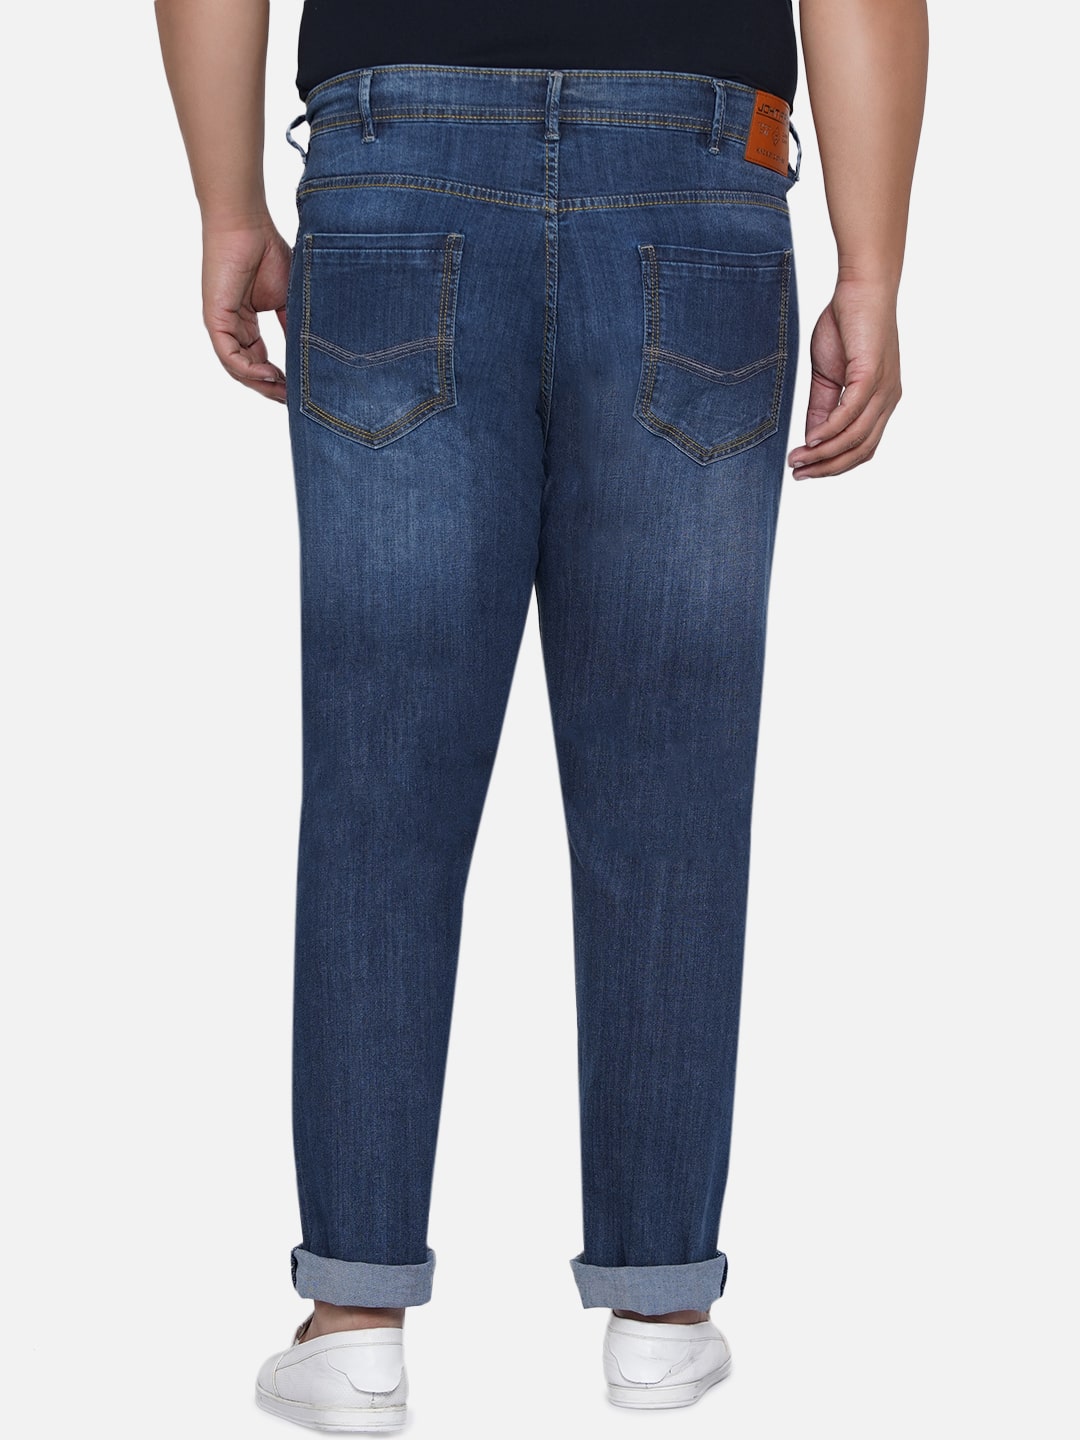 bottomwear/jeans/EJPJ25013/ejpj25013-3.jpg